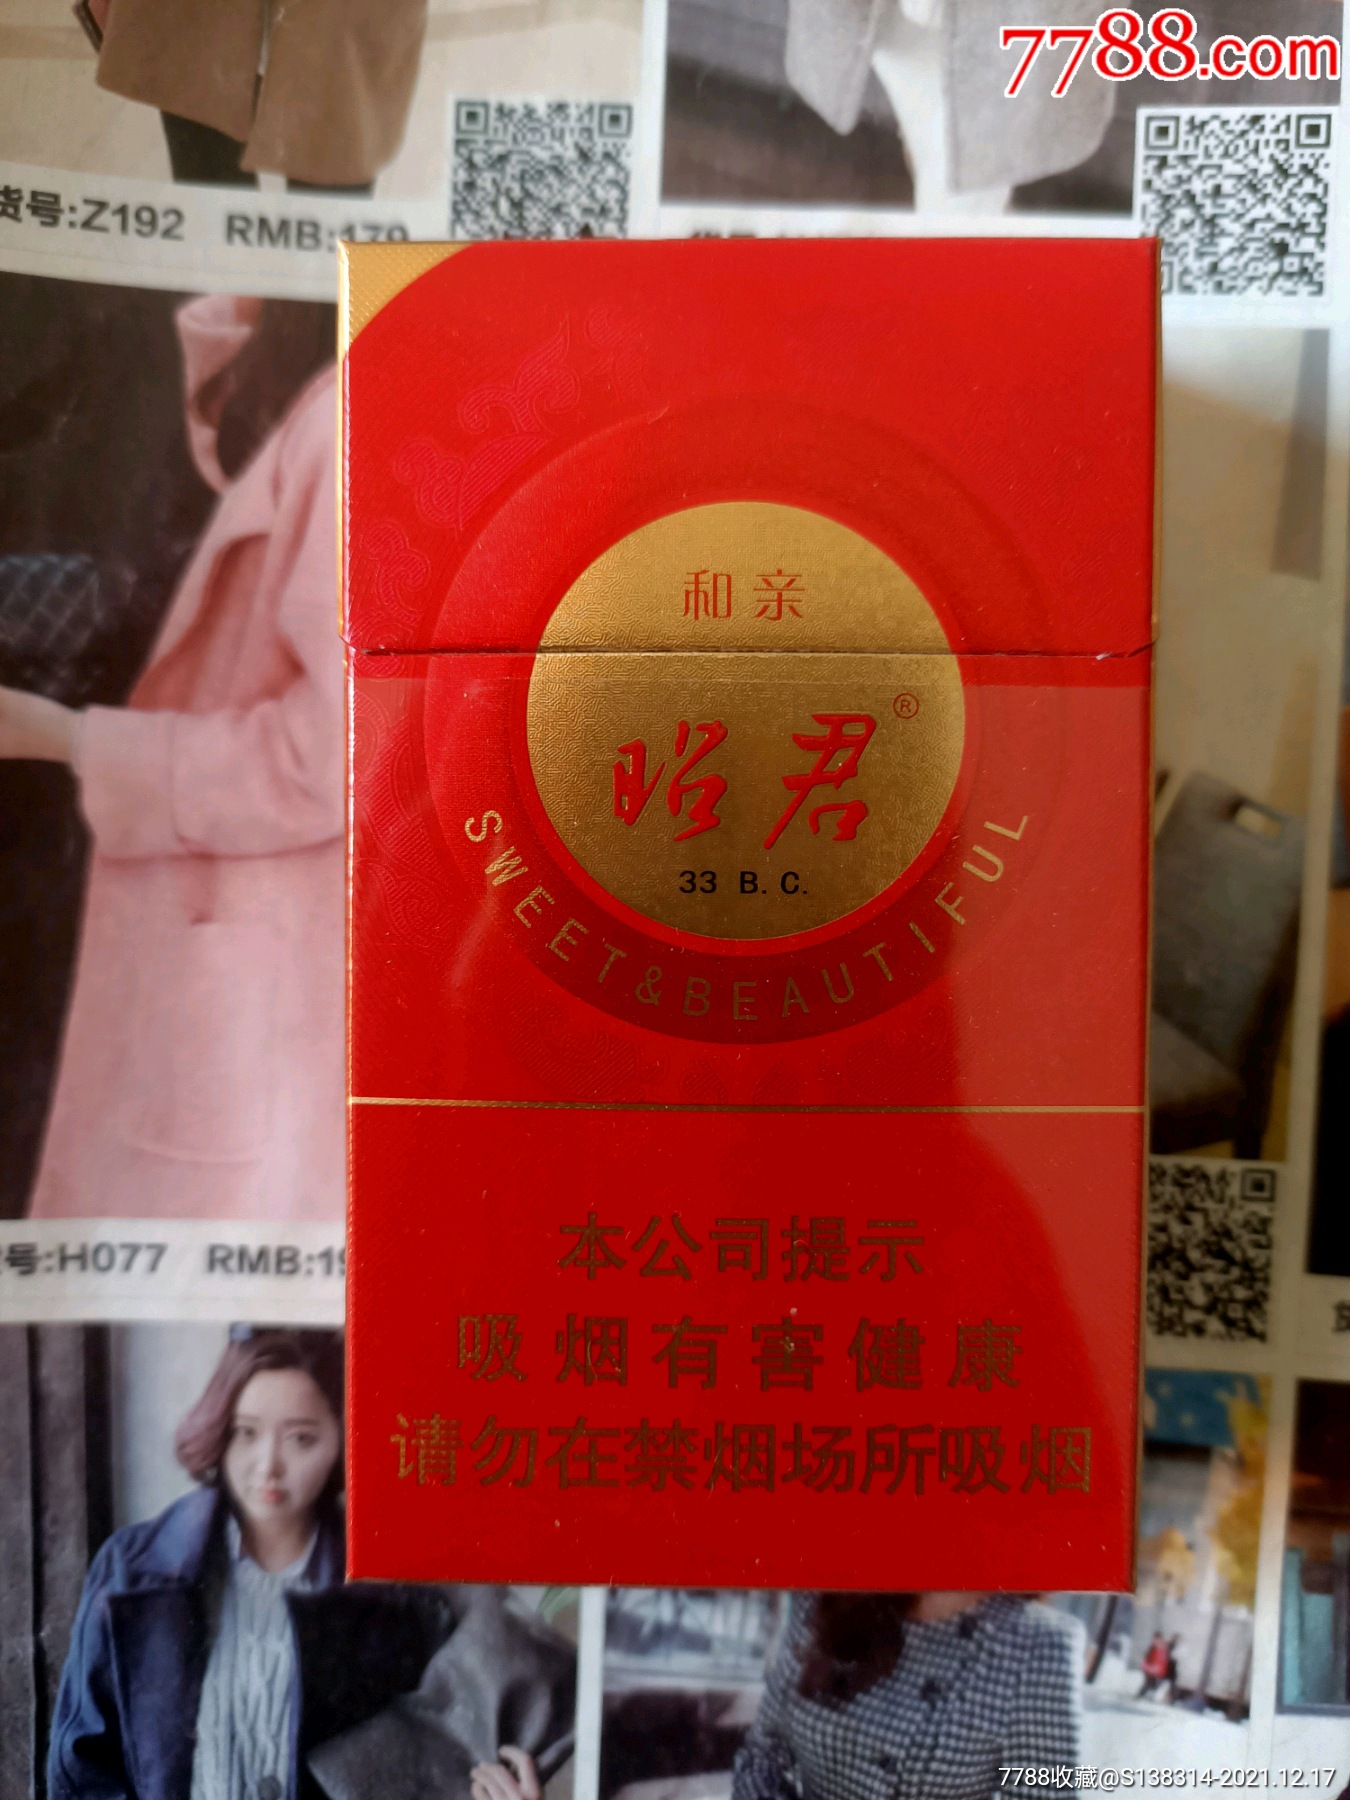 红盒昭君和亲香烟图片